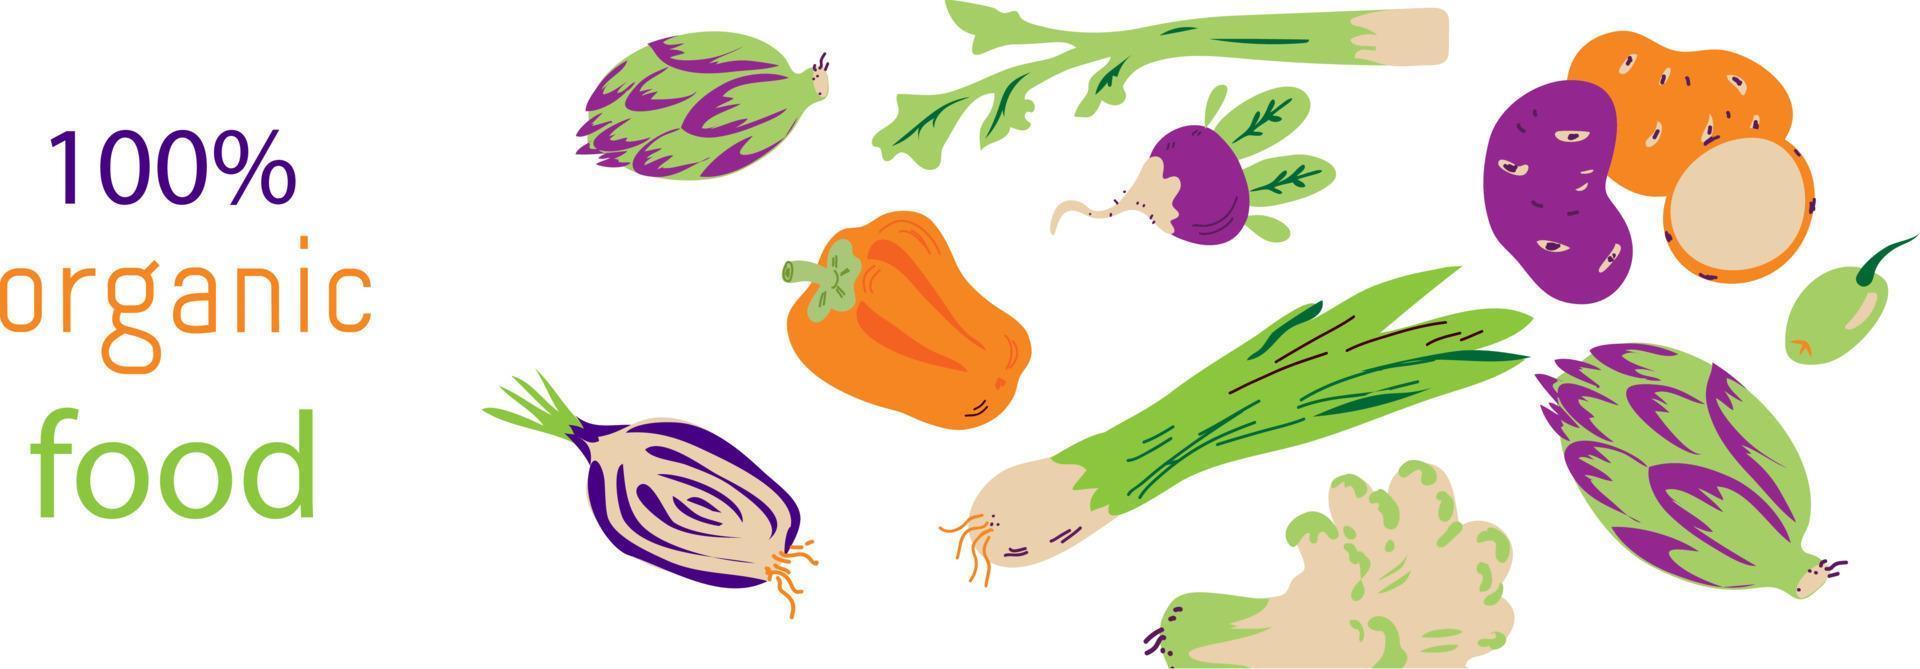 plantilla de folleto de comida vegetariana orgánica o etiqueta con iconos de verduras la ilustración de vector plano sobre fondo blanco. concepto para ferias y tiendas ecológicas veganas y de agricultores.